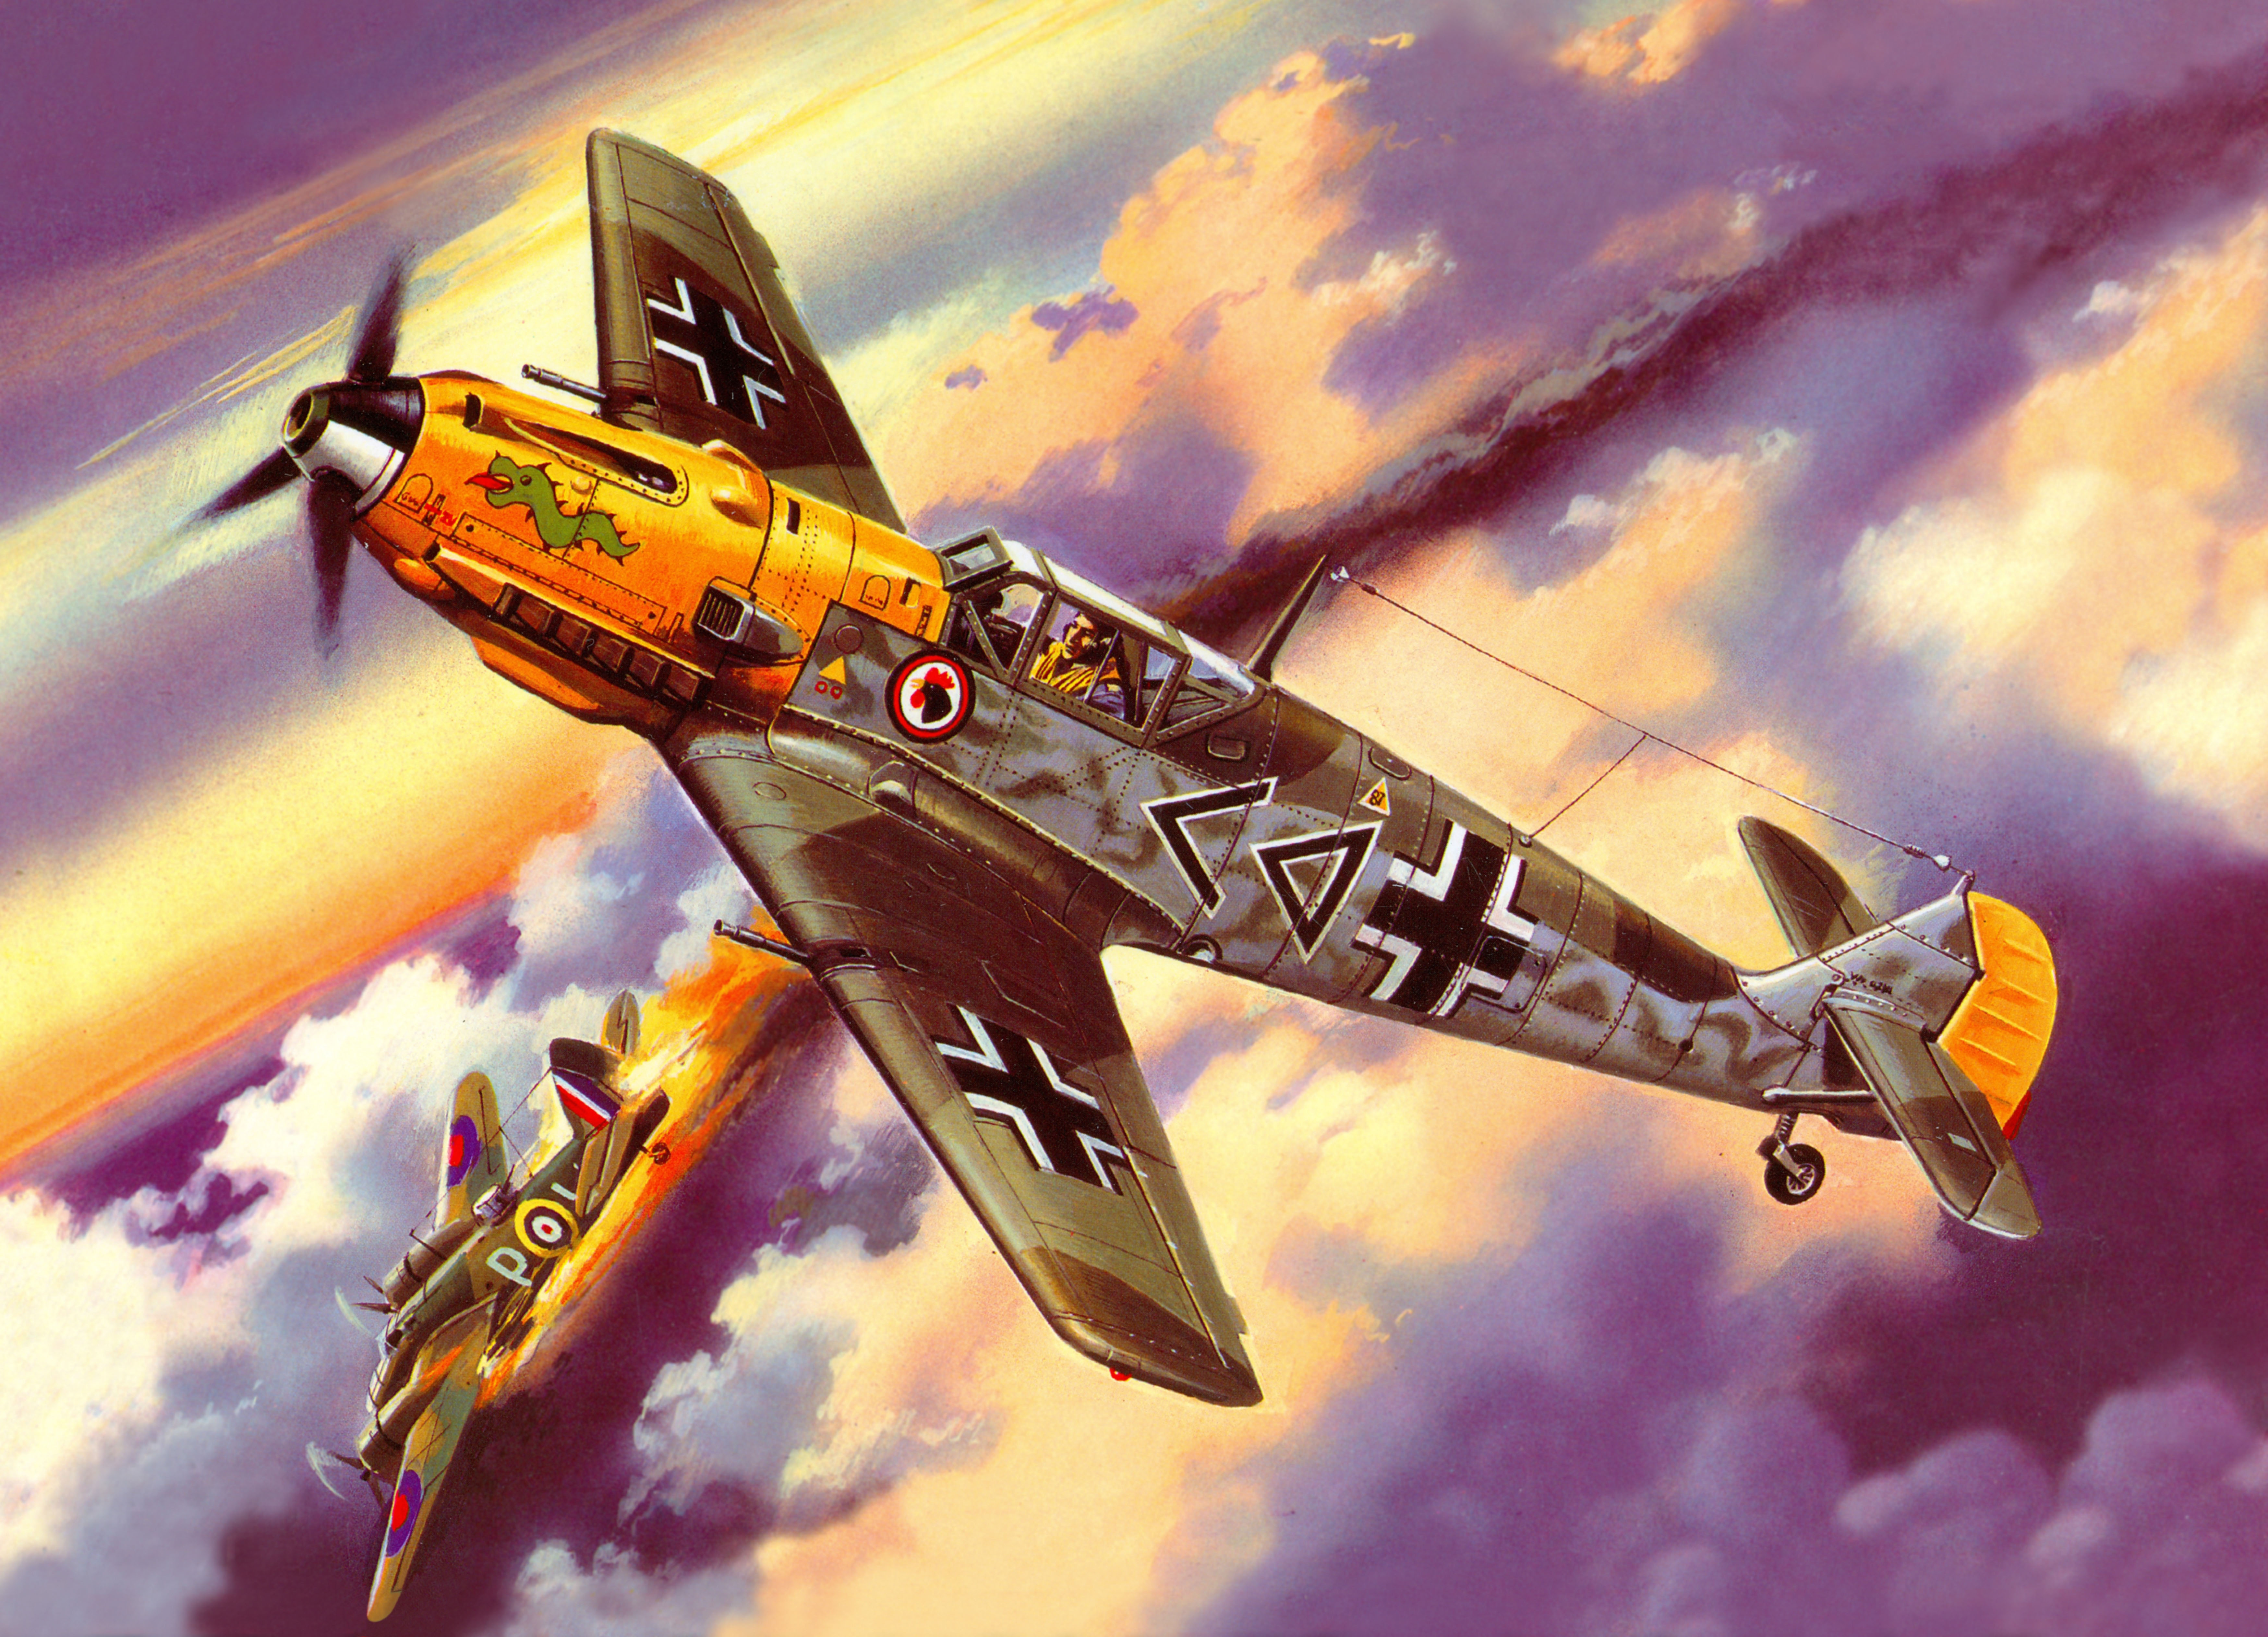 Messerschmitt Bf 109 Painting - HD Wallpaper 